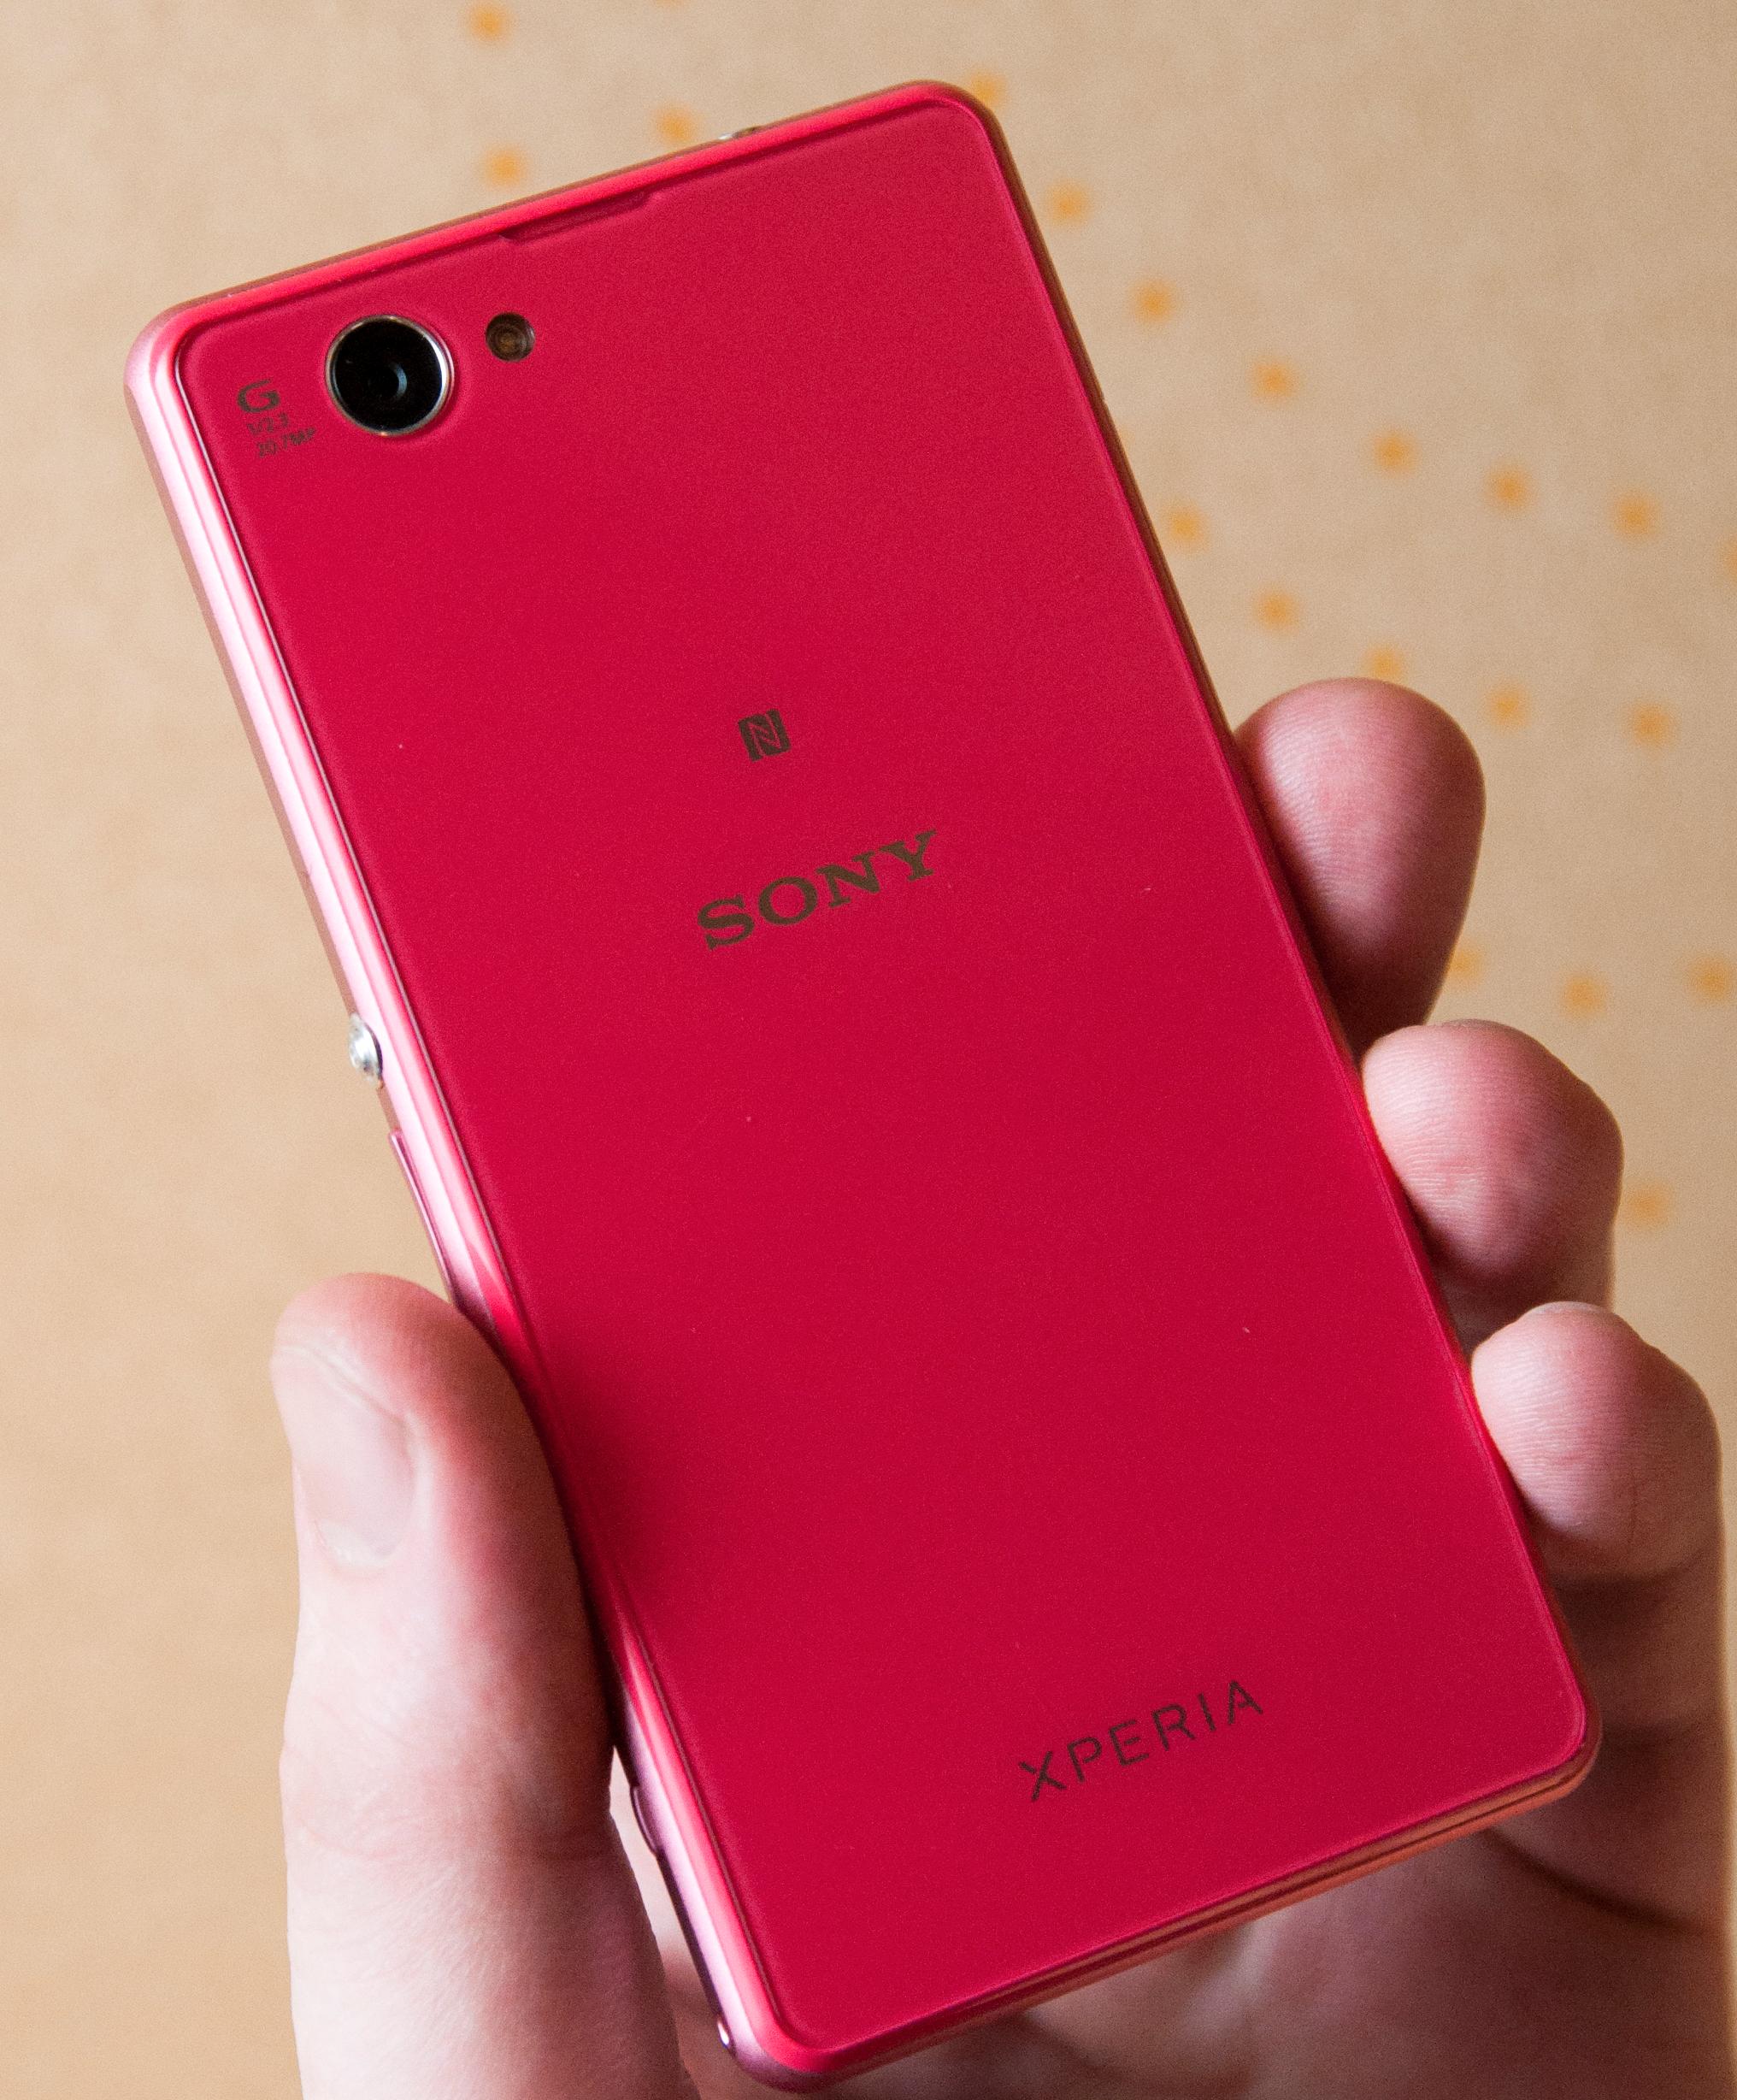 Telefoner blir ikke stort mer rosa enn denne utgaven av Sony Xperia Z1 Compact.Foto: Finn Jarle Kvalheim, Amobil.no